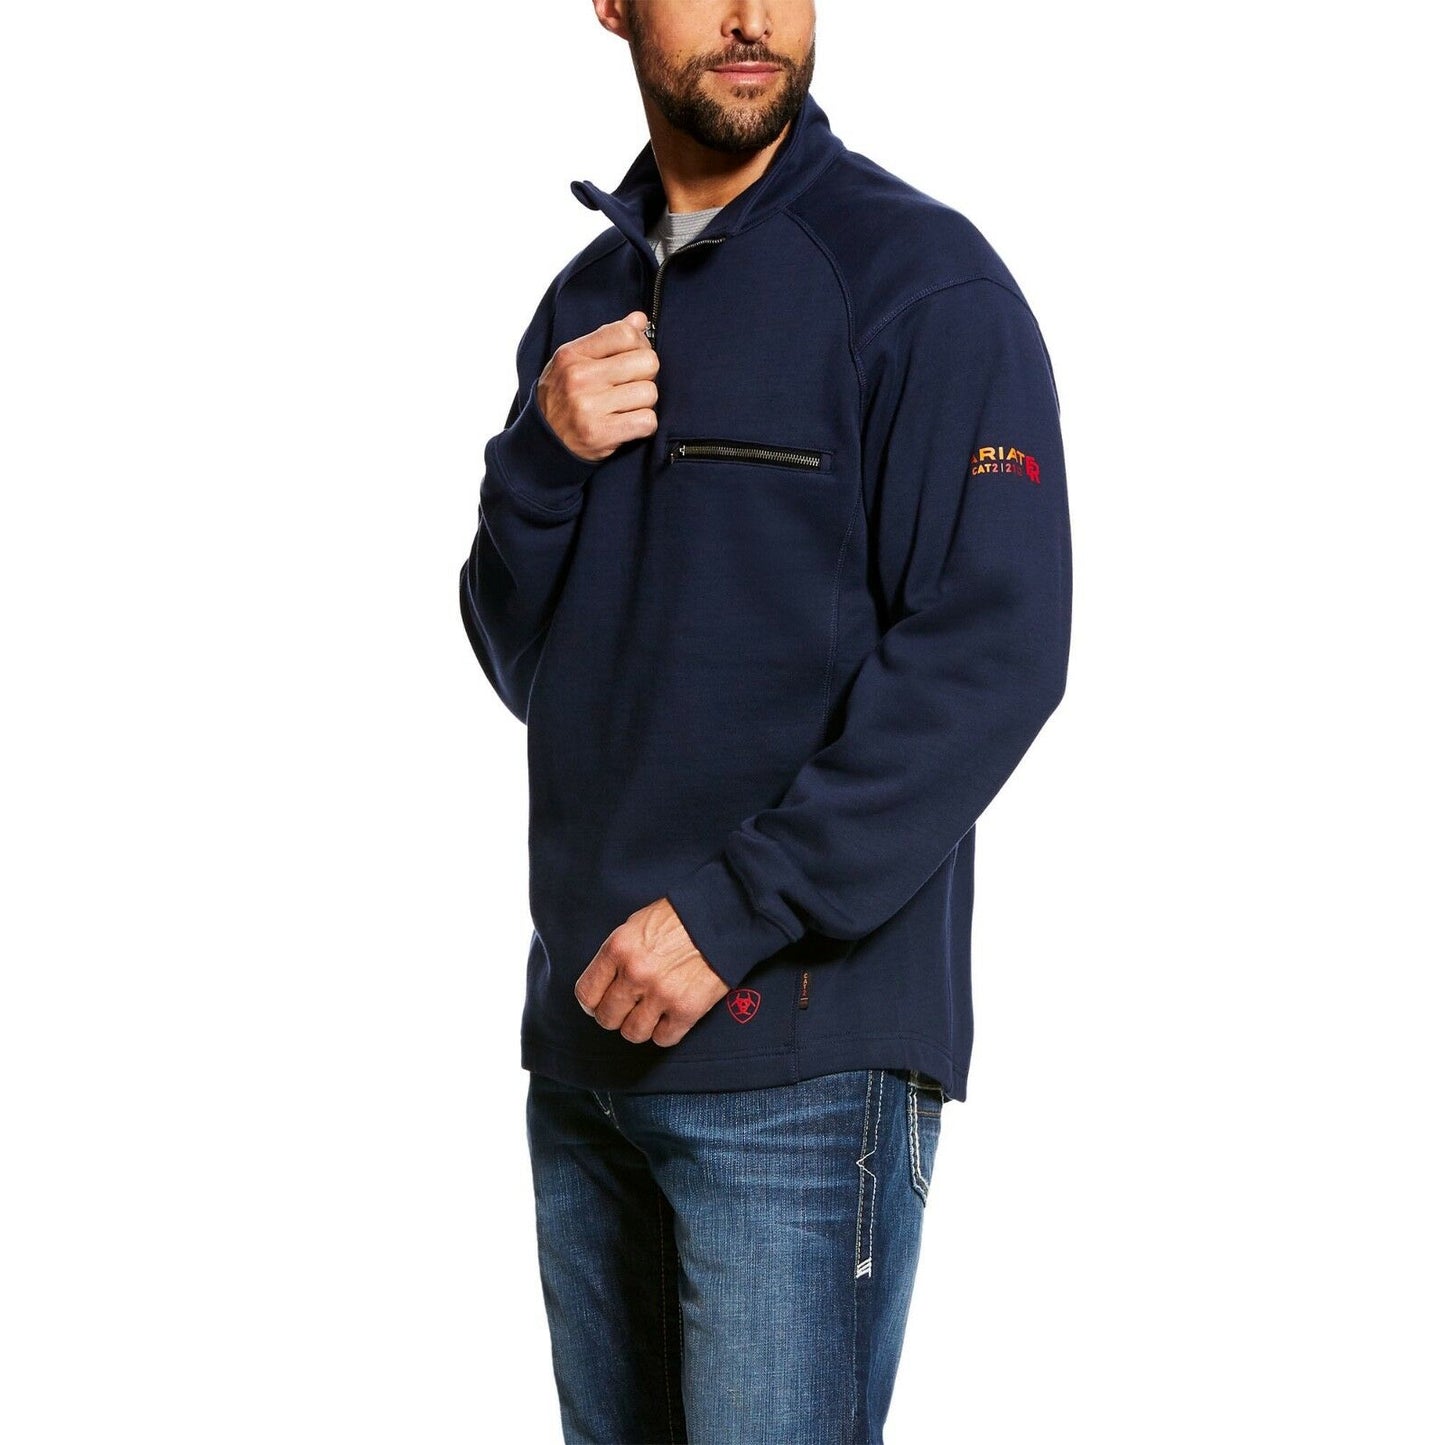 Ariat® Men's FR Rev 1/4 Zip Top Navy Pullover Sweatshirt 10022333